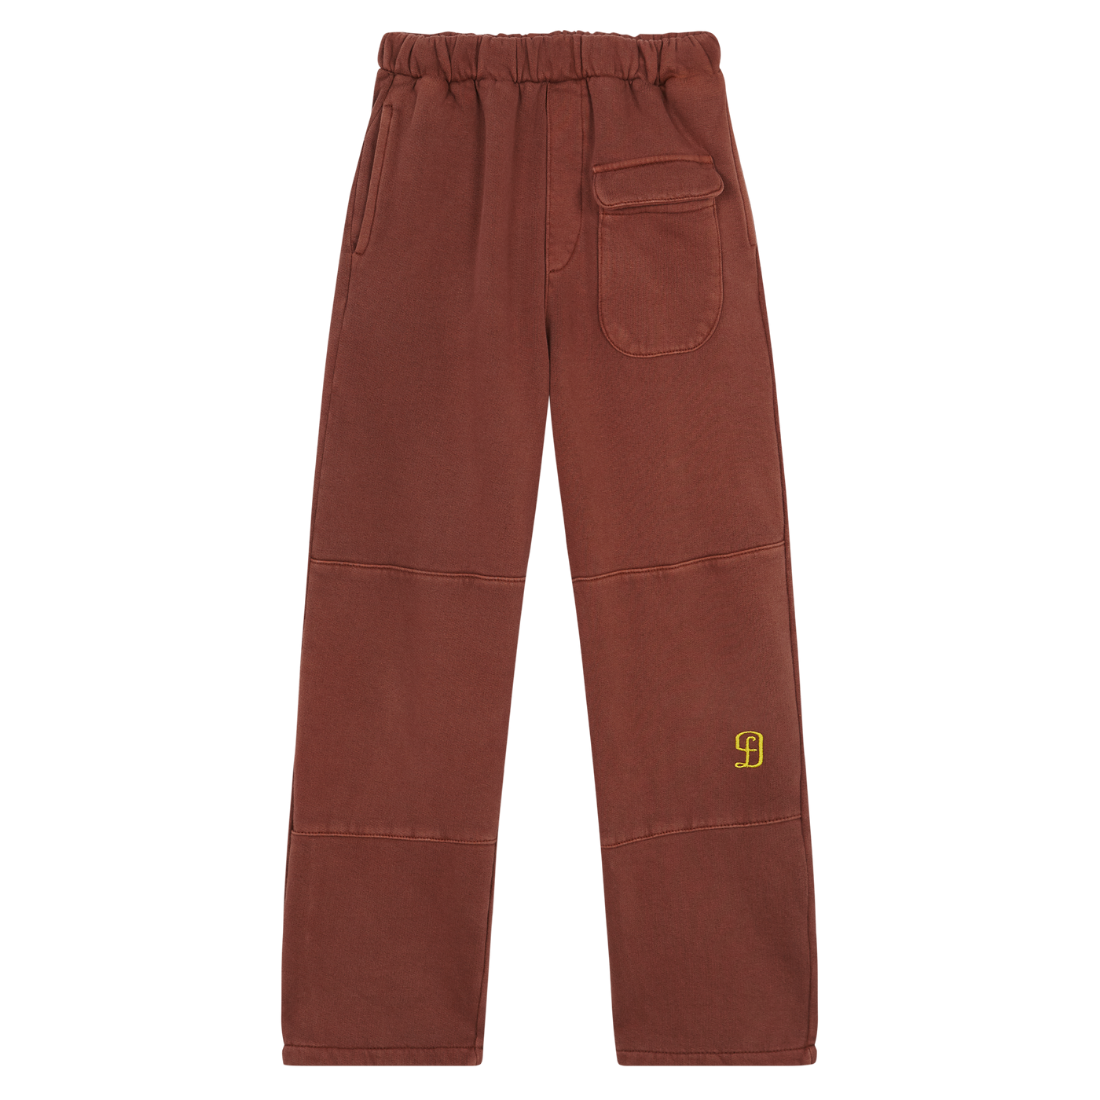 FD Brown Pants